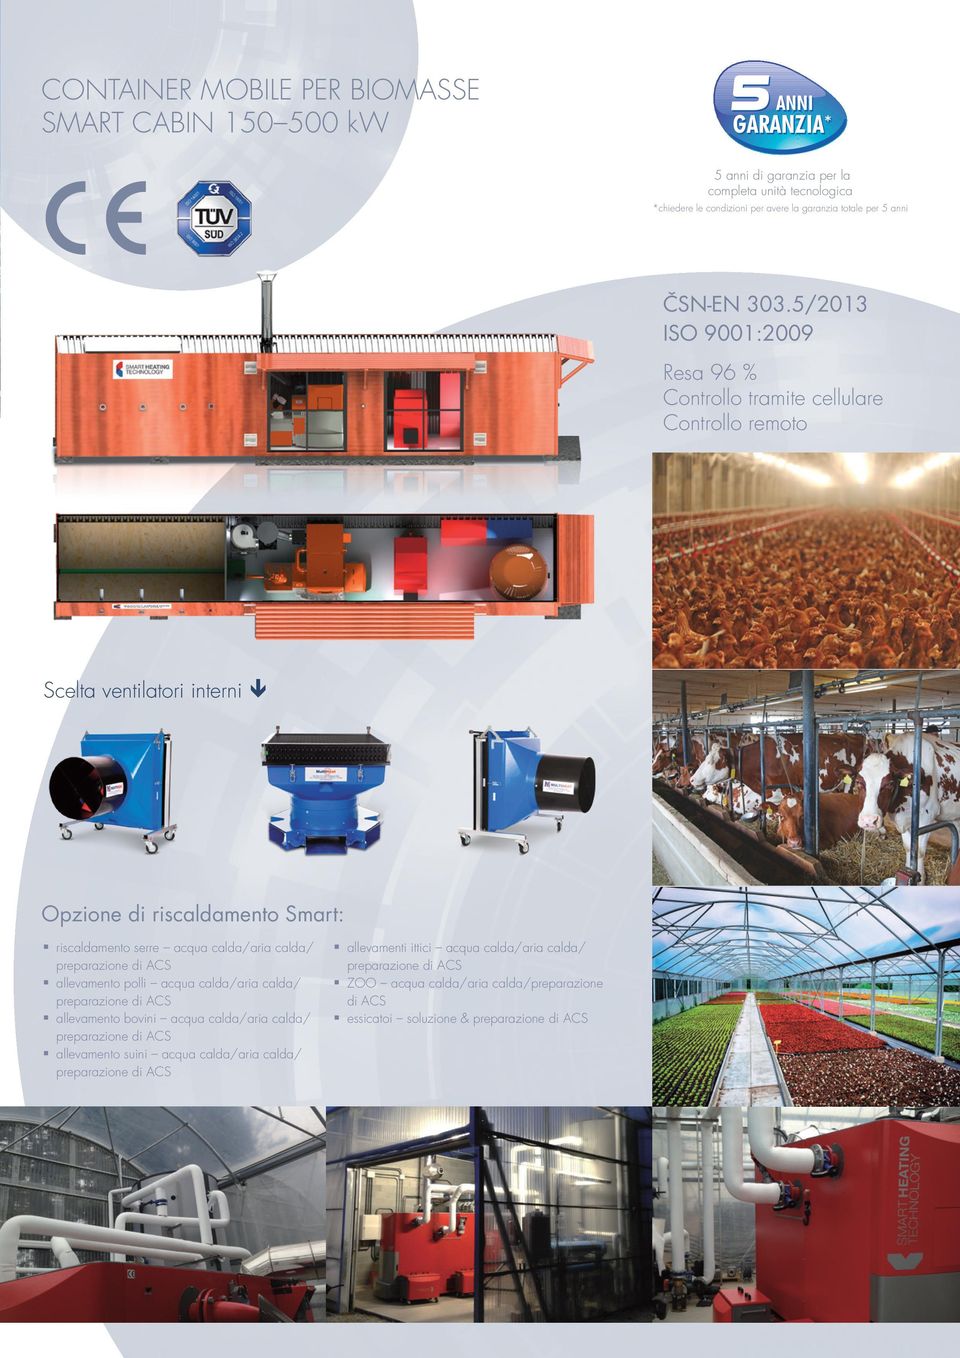 5/2013 ISO 9001:2009 Resa 96 % Controllo tramite cellulare Controllo remoto Scelta ventilatori interni Opzione di riscaldamento Smart: riscaldamento